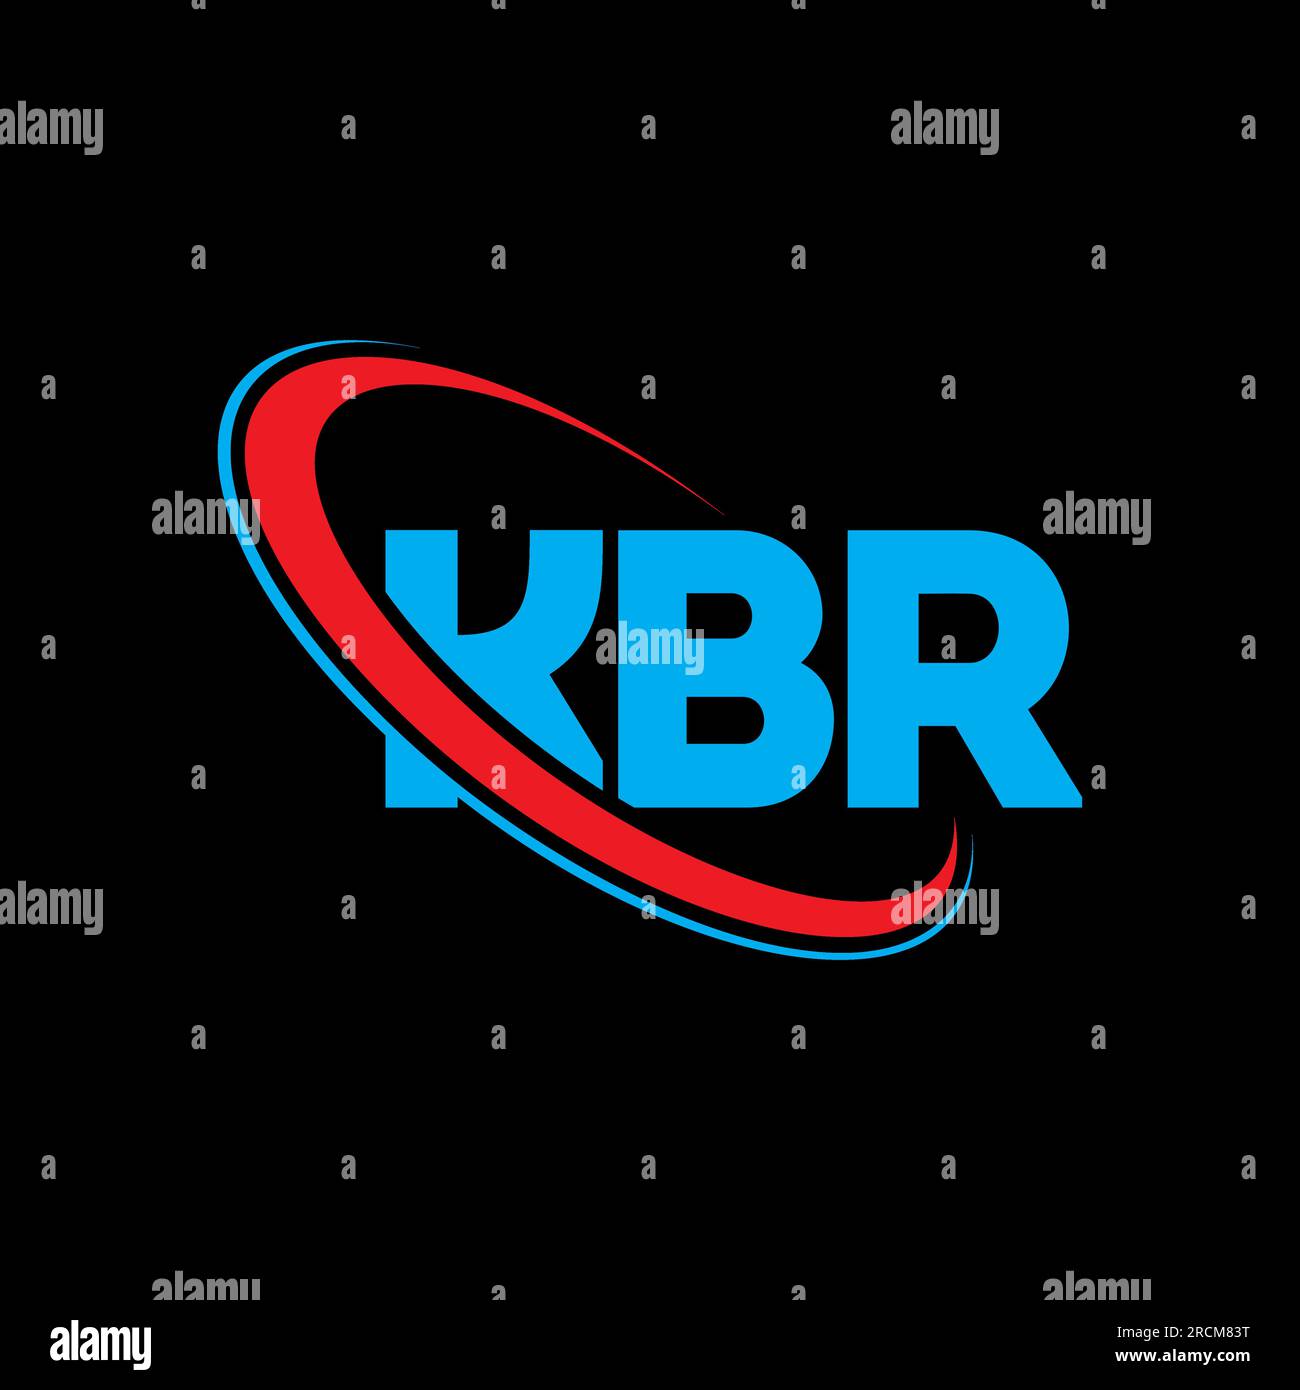 KBR-Logo. KBR-Brief. Logo mit KBR-Buchstaben. Initialen KBR-Logo, verbunden mit einem Kreis und einem Monogramm-Logo in Großbuchstaben. KBR-Typografie für Technologie, Geschäfte Stock Vektor